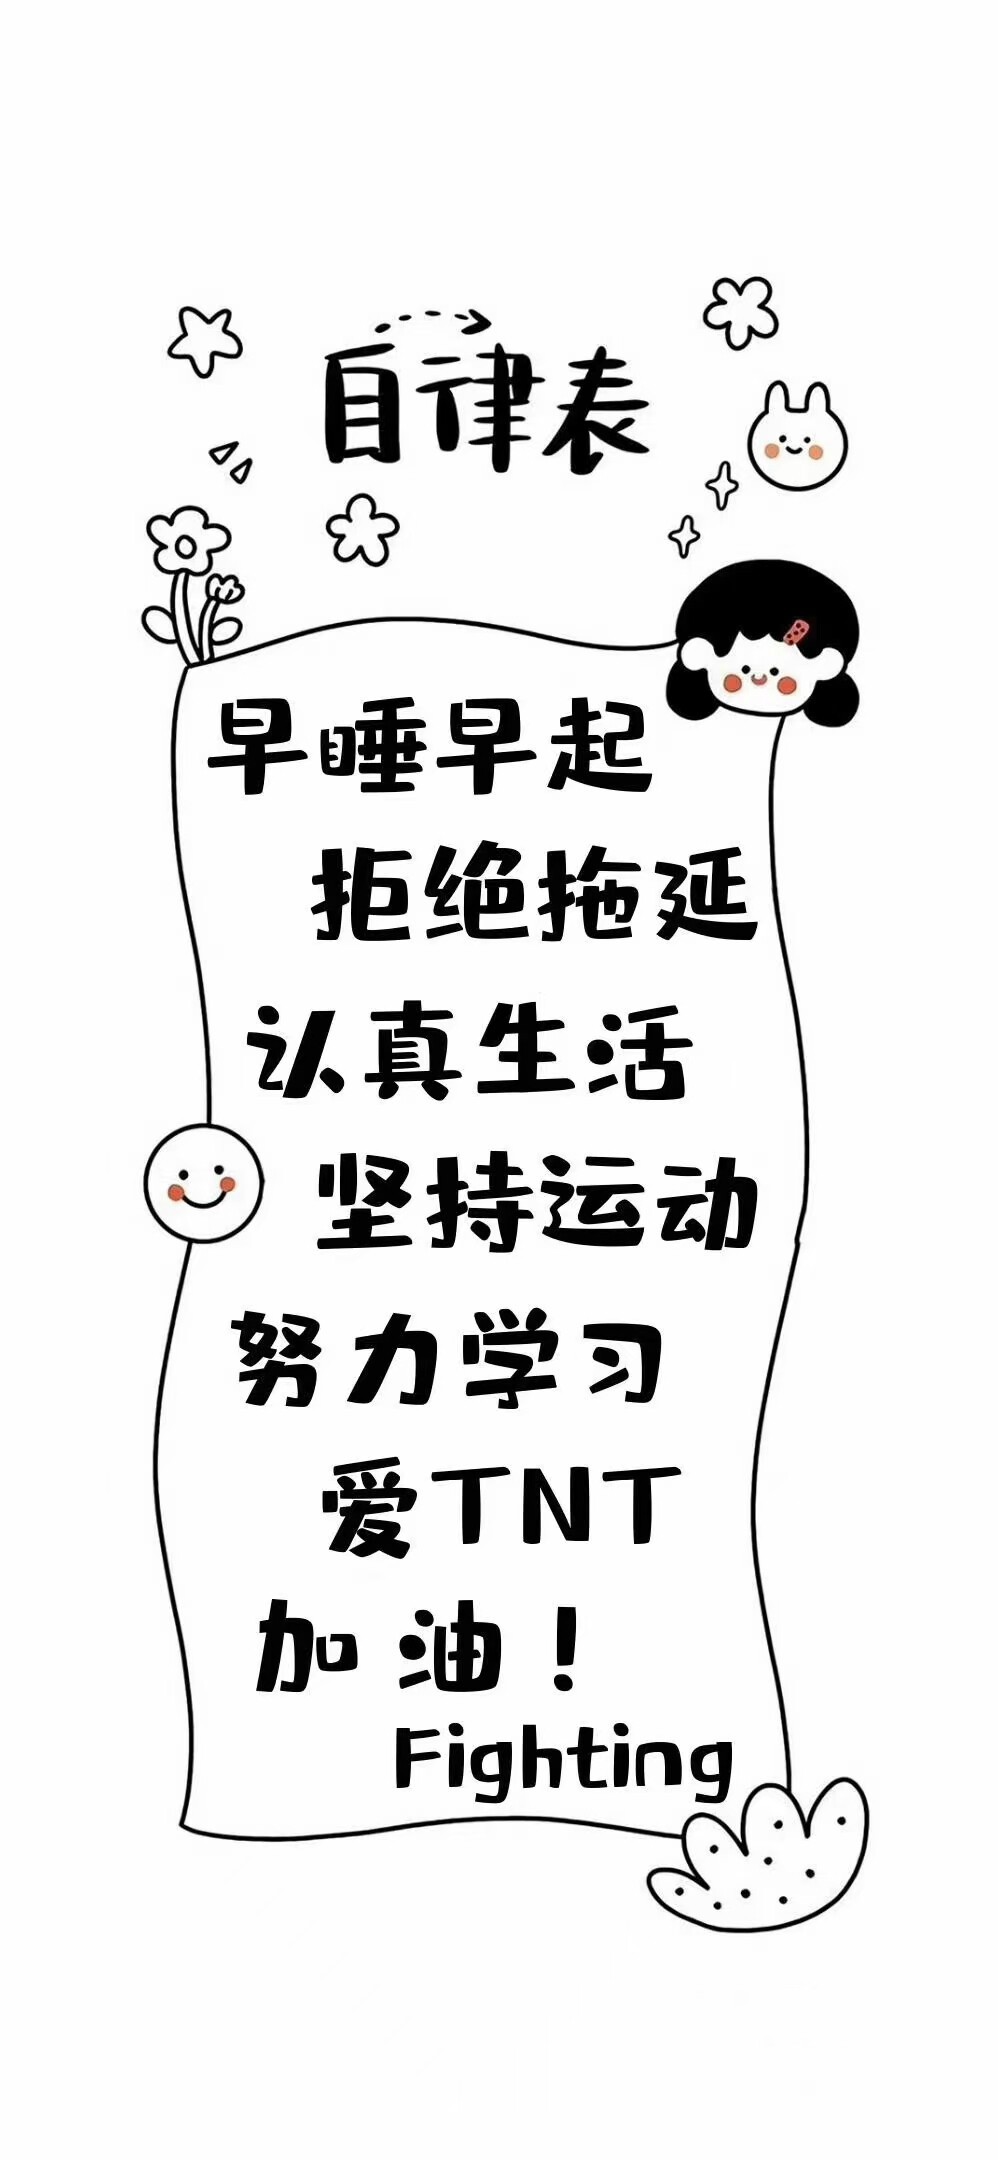 关于TNT的文字壁纸图片